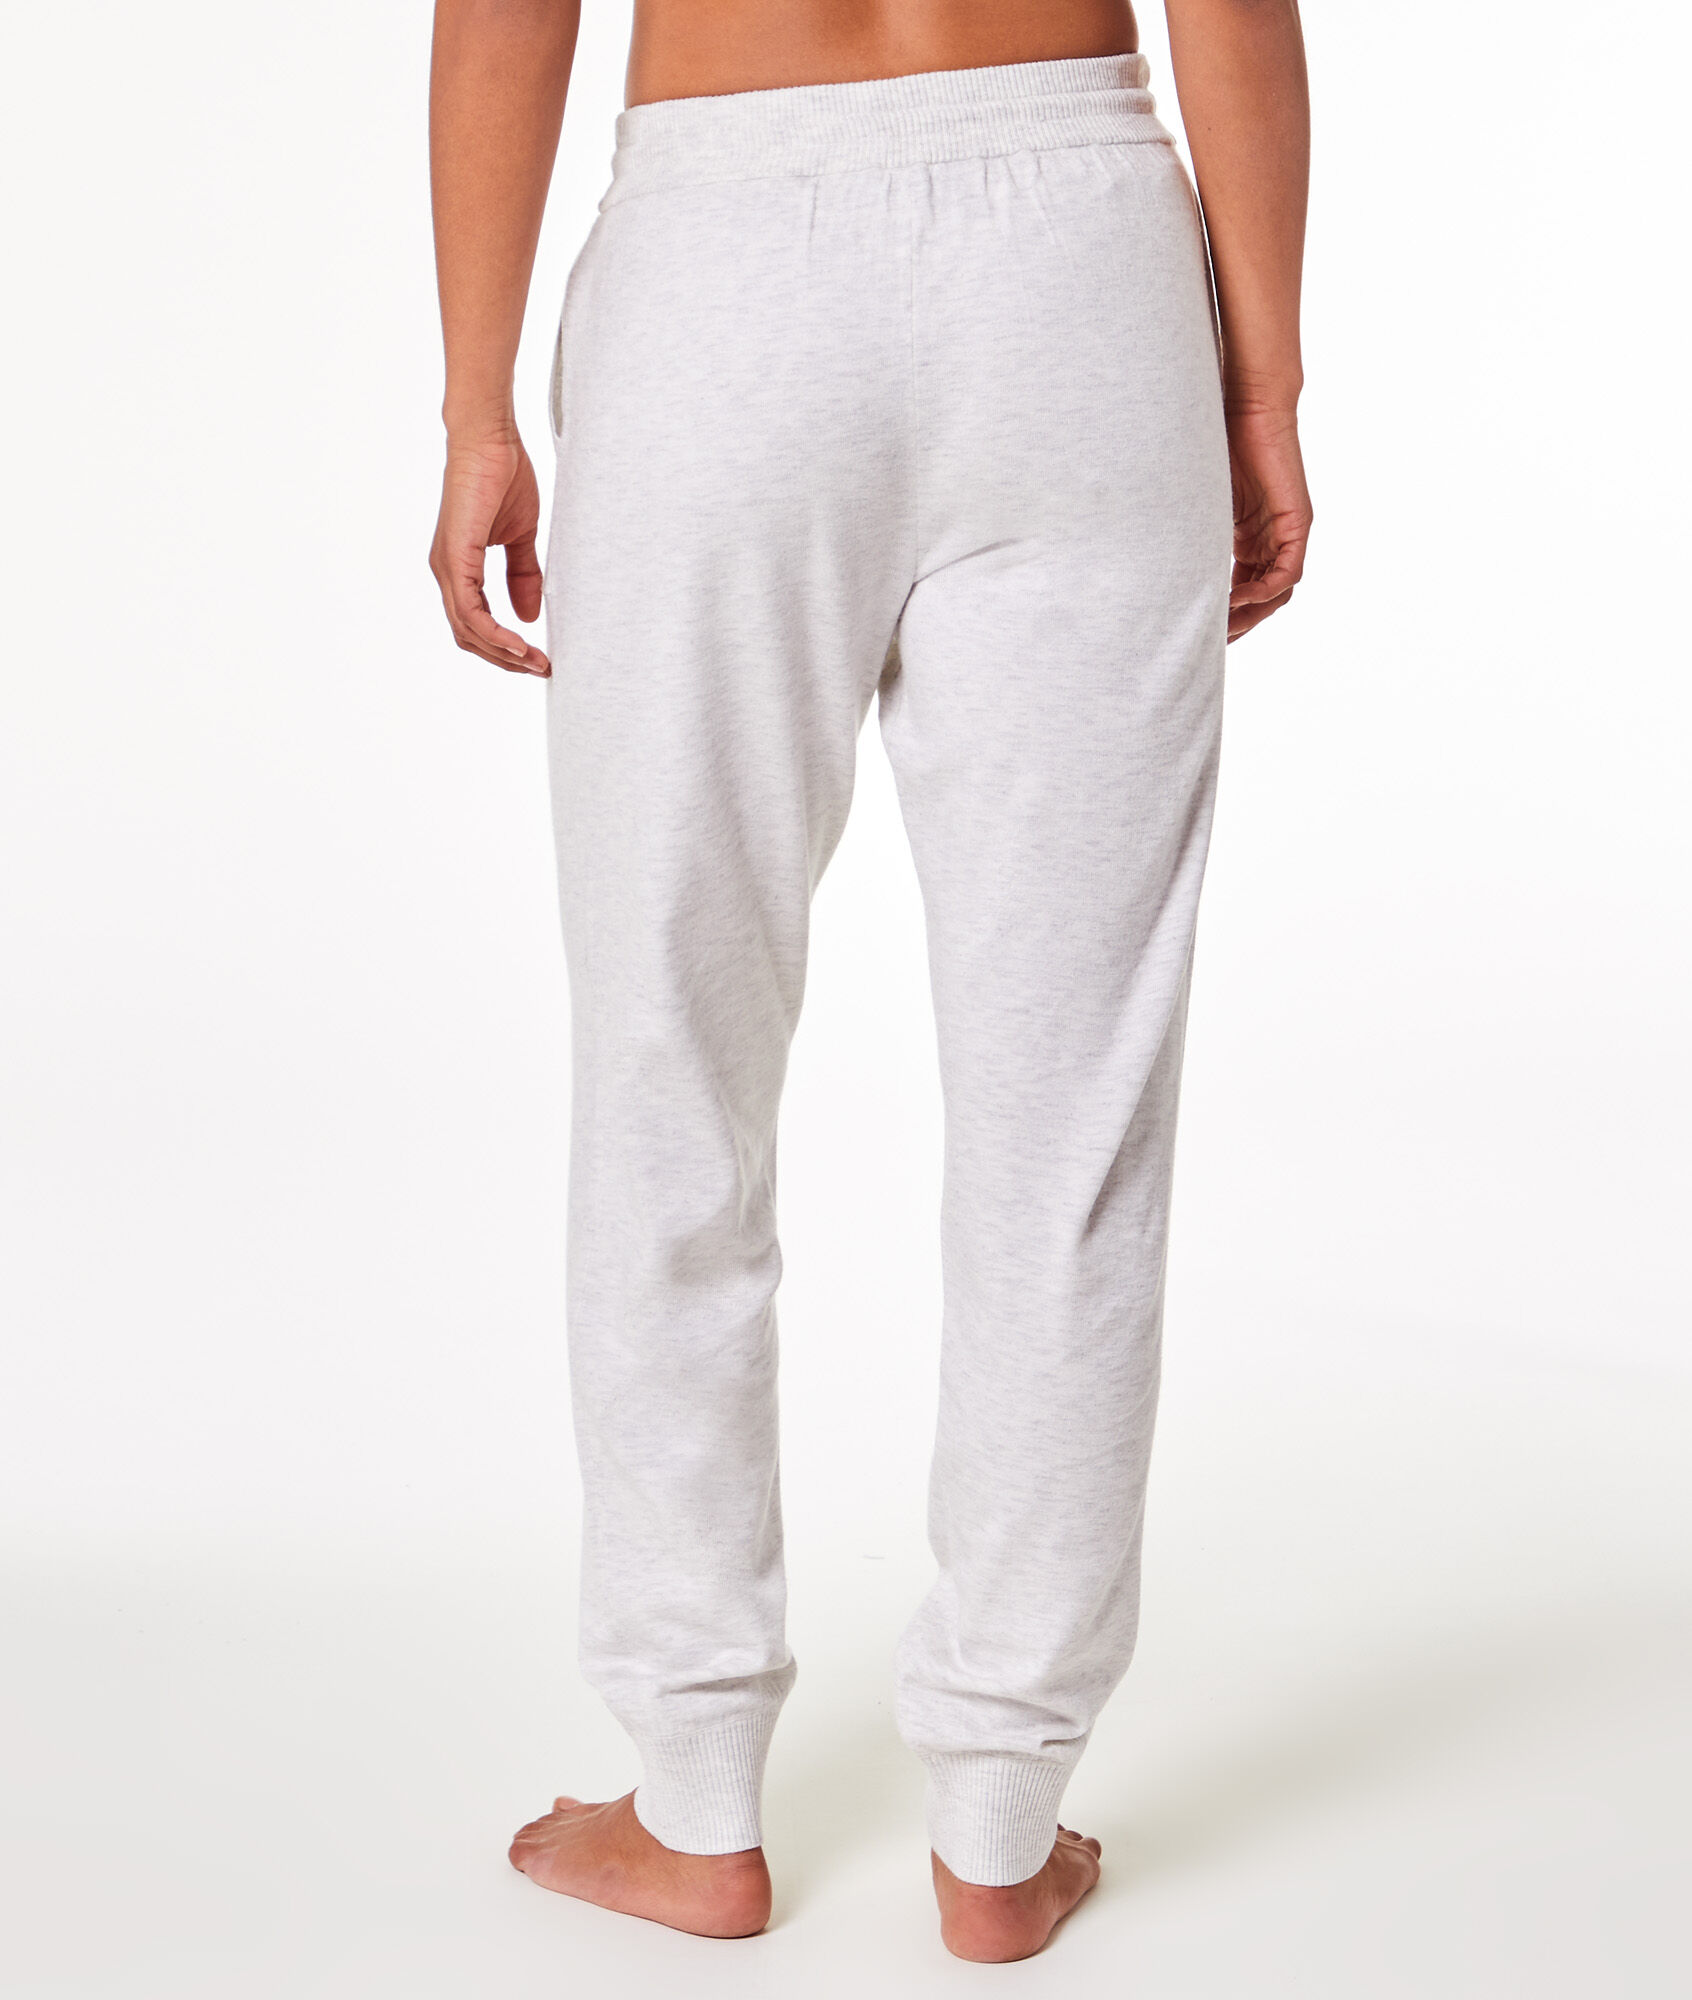 Men's Knitted PJ Cotton Pajama Pants 